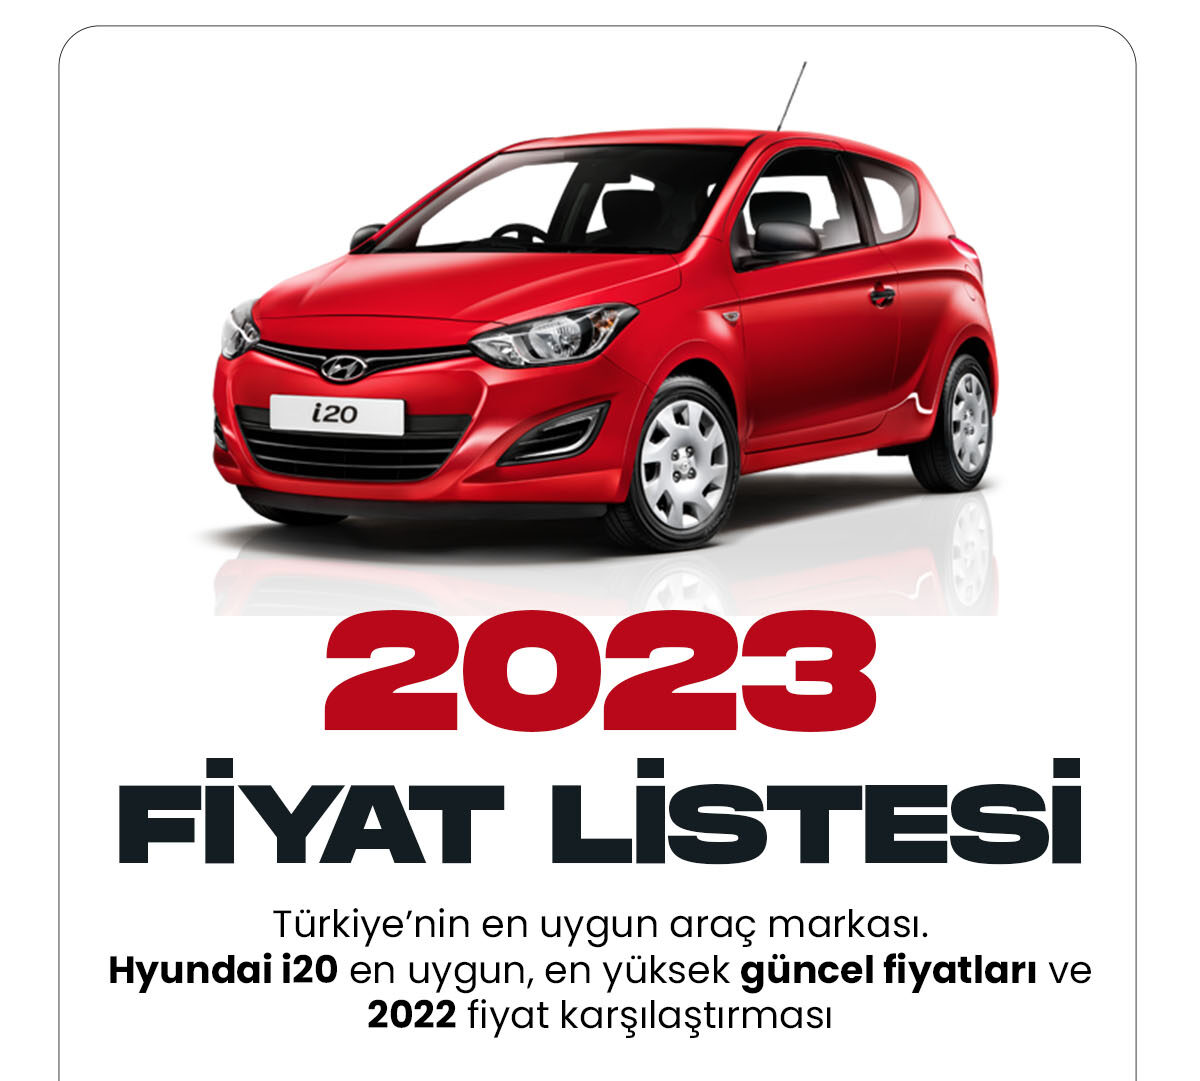 Hyundai i20 Ocak fiyat listesi yayımlandı. Türkiye'de en sevilen ve uygun fiyat olan Hyundai markası yeni yılda tüm araç fiyatlarını güncelleneye devam ediyor.